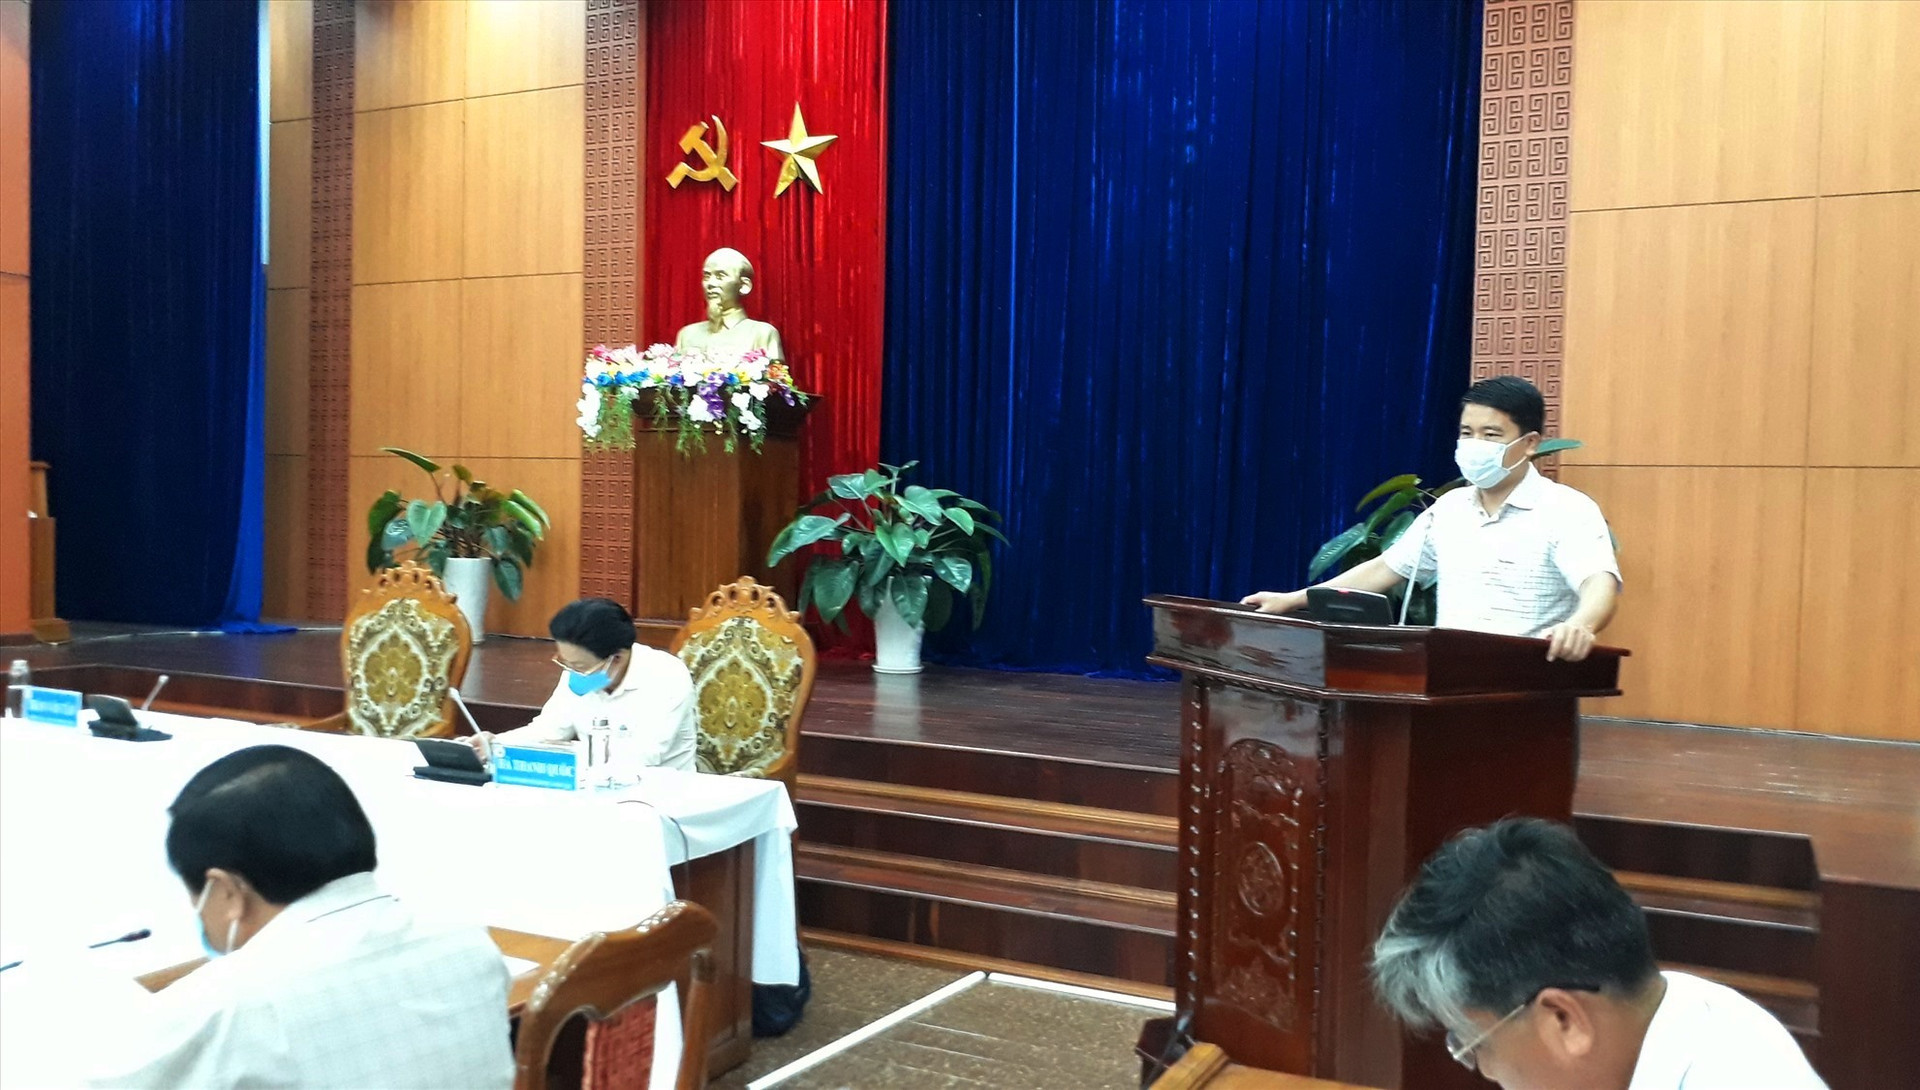 Phó Chủ tịch UBND tỉnh Trần Văn Tân khai mạc hội nghị. Ảnh: X.P